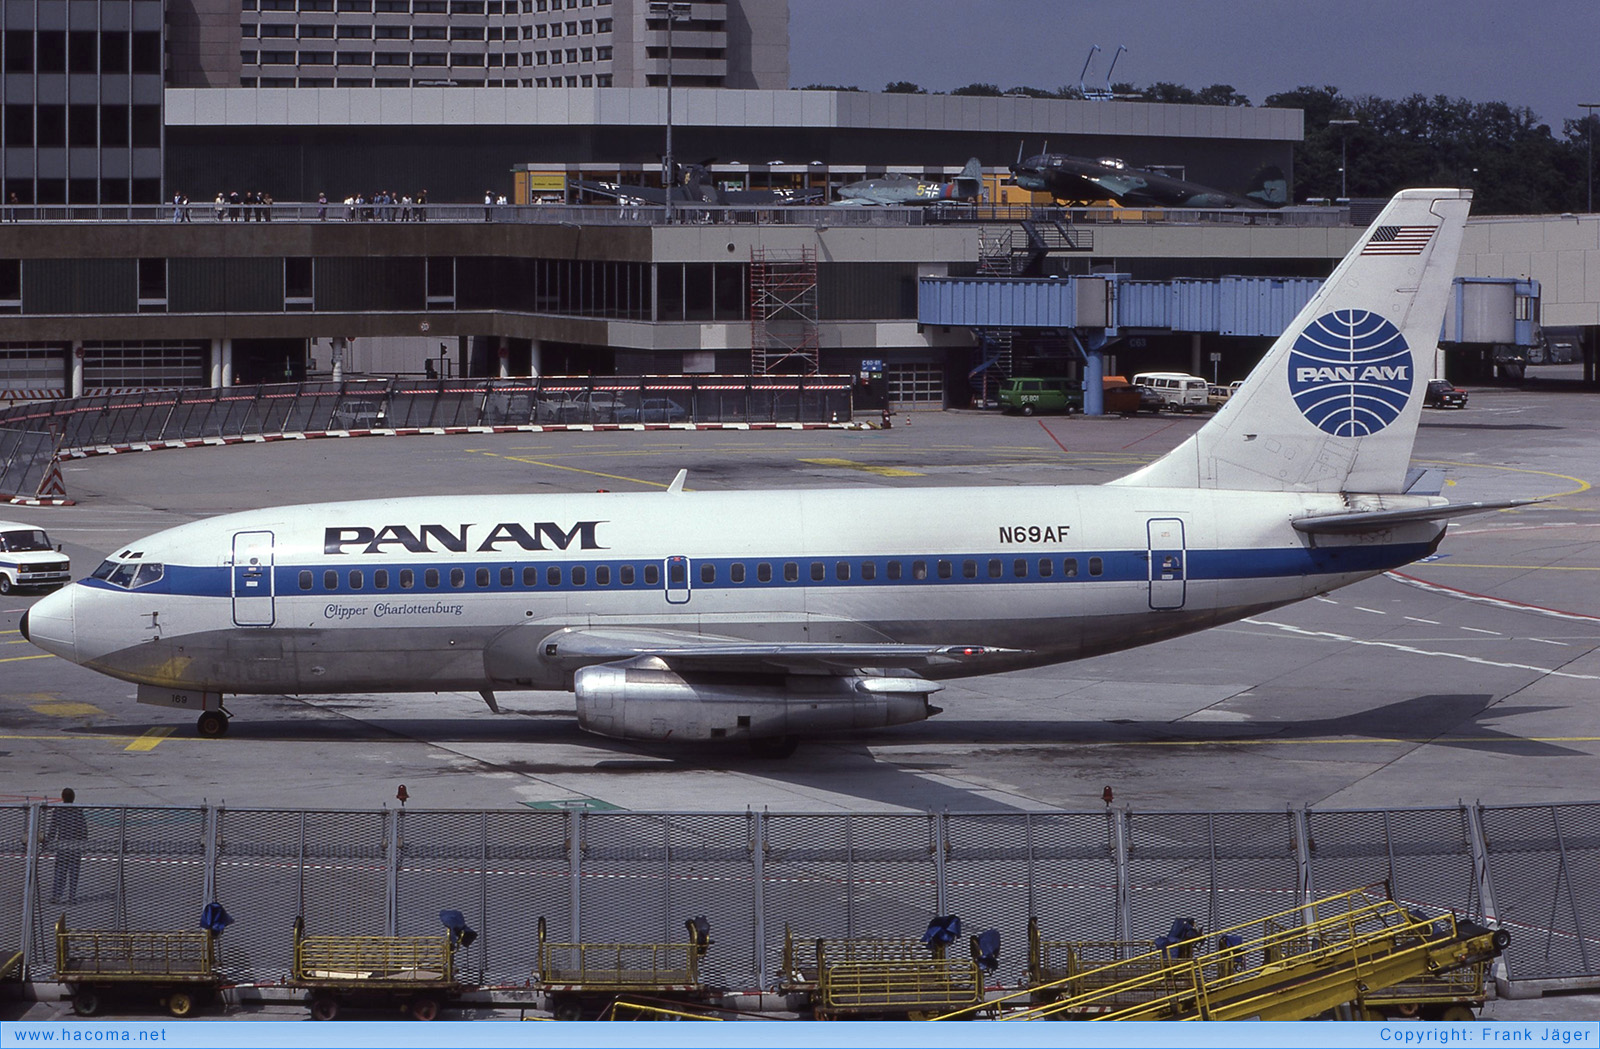 Foto von N69AF - Pan Am Clipper Charlottenburg / Nightingale - Flughafen Frankfurt am Main - 24.06.1984